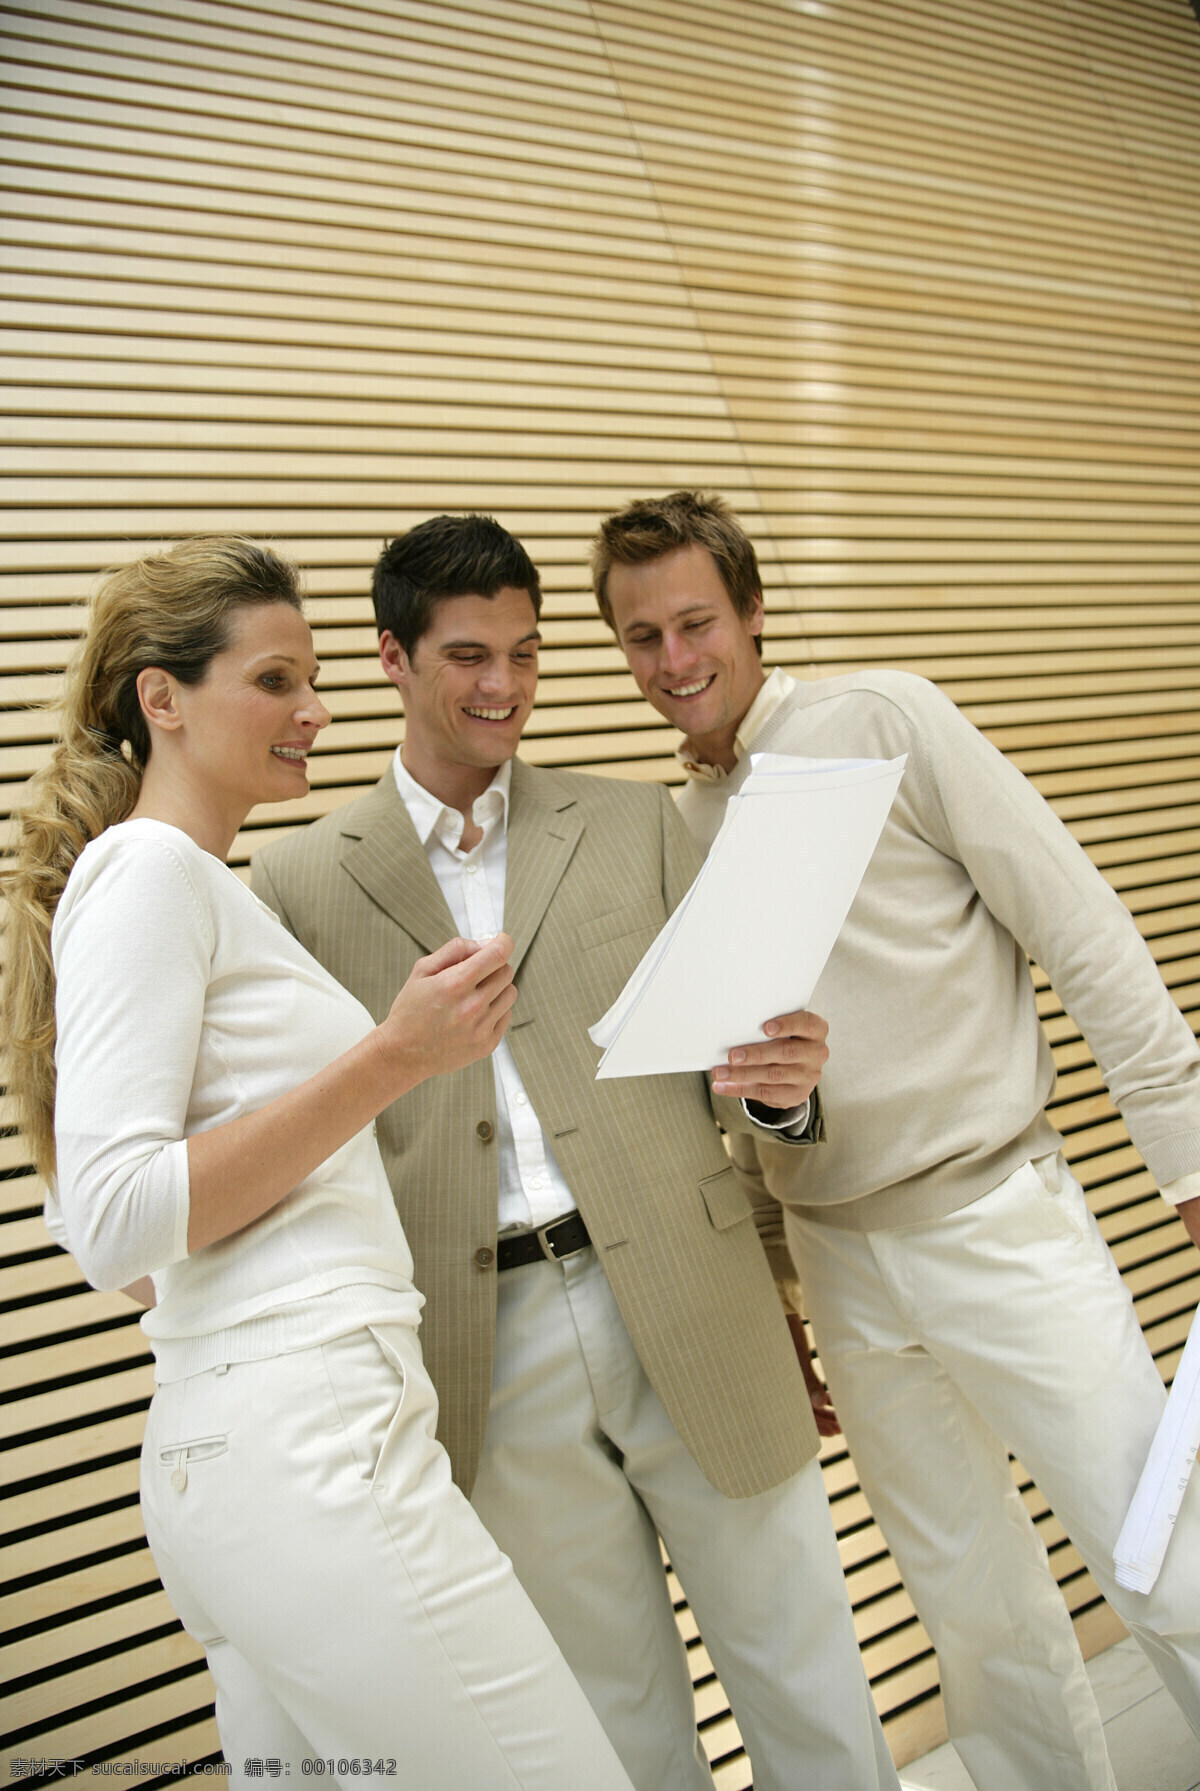 三个 看着 文件 面带微笑 白领 精英 职场 讨论 成功 喜悦 职业装 工作 思考 男人 商务 人物 外国人 高清图片 商务人士 人物图片